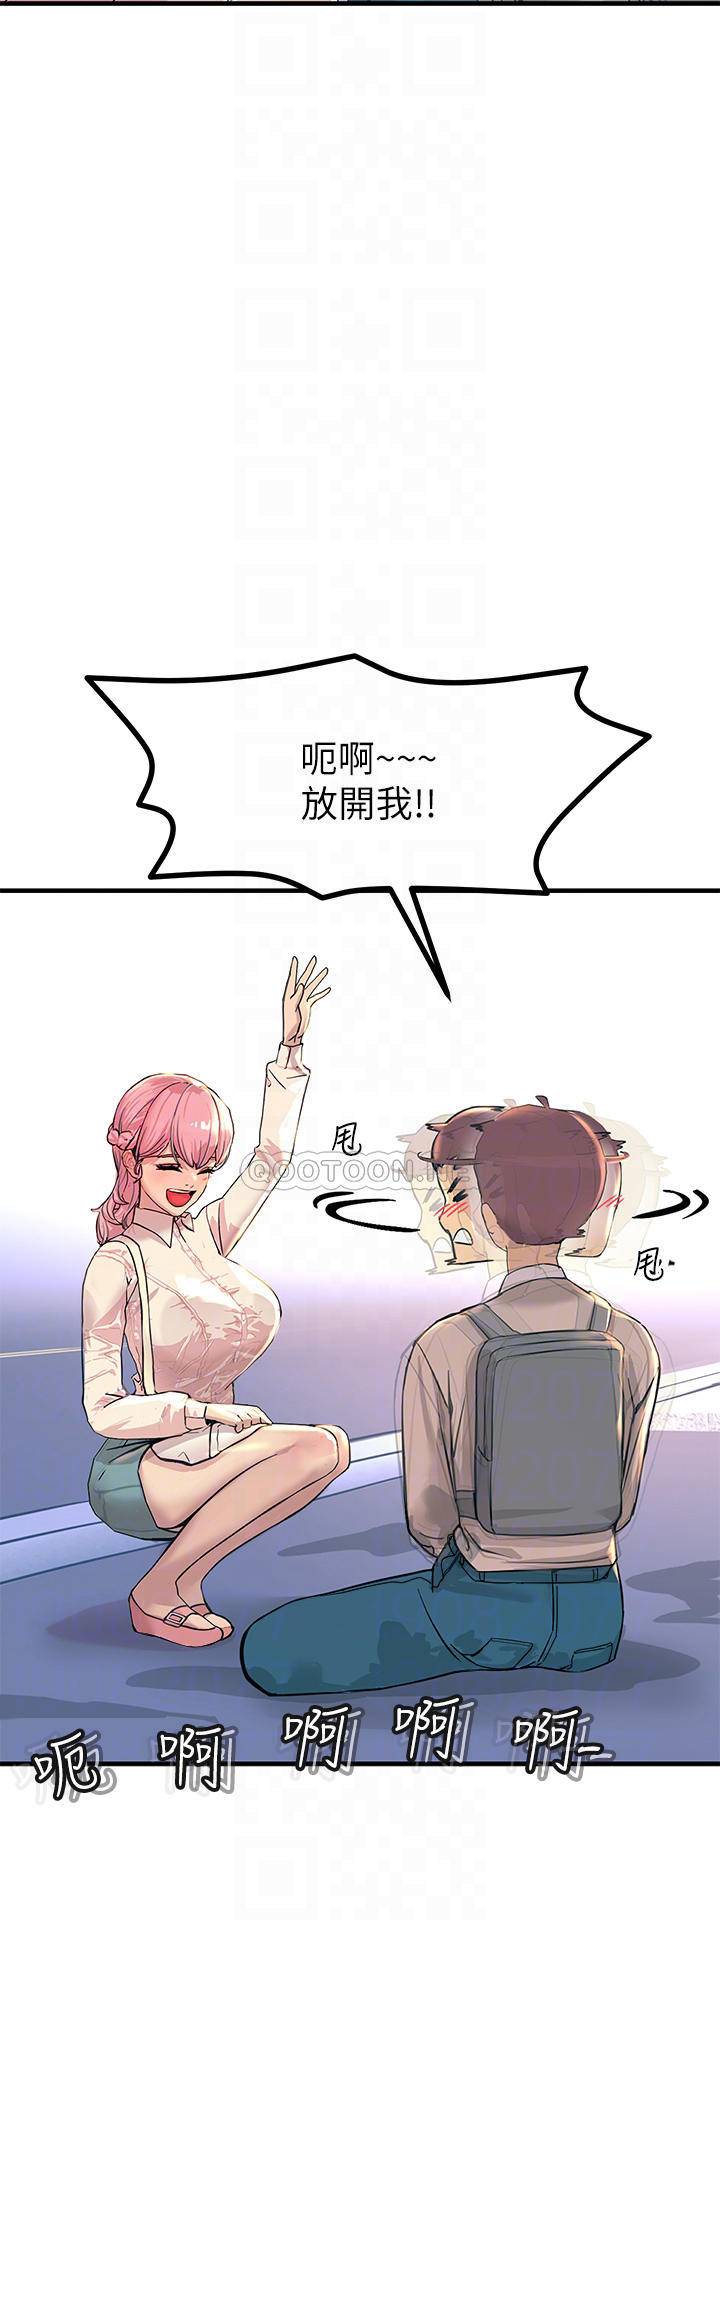 韩国污漫画 觸電大師 第2话 和性感胴体的亲密接触 14